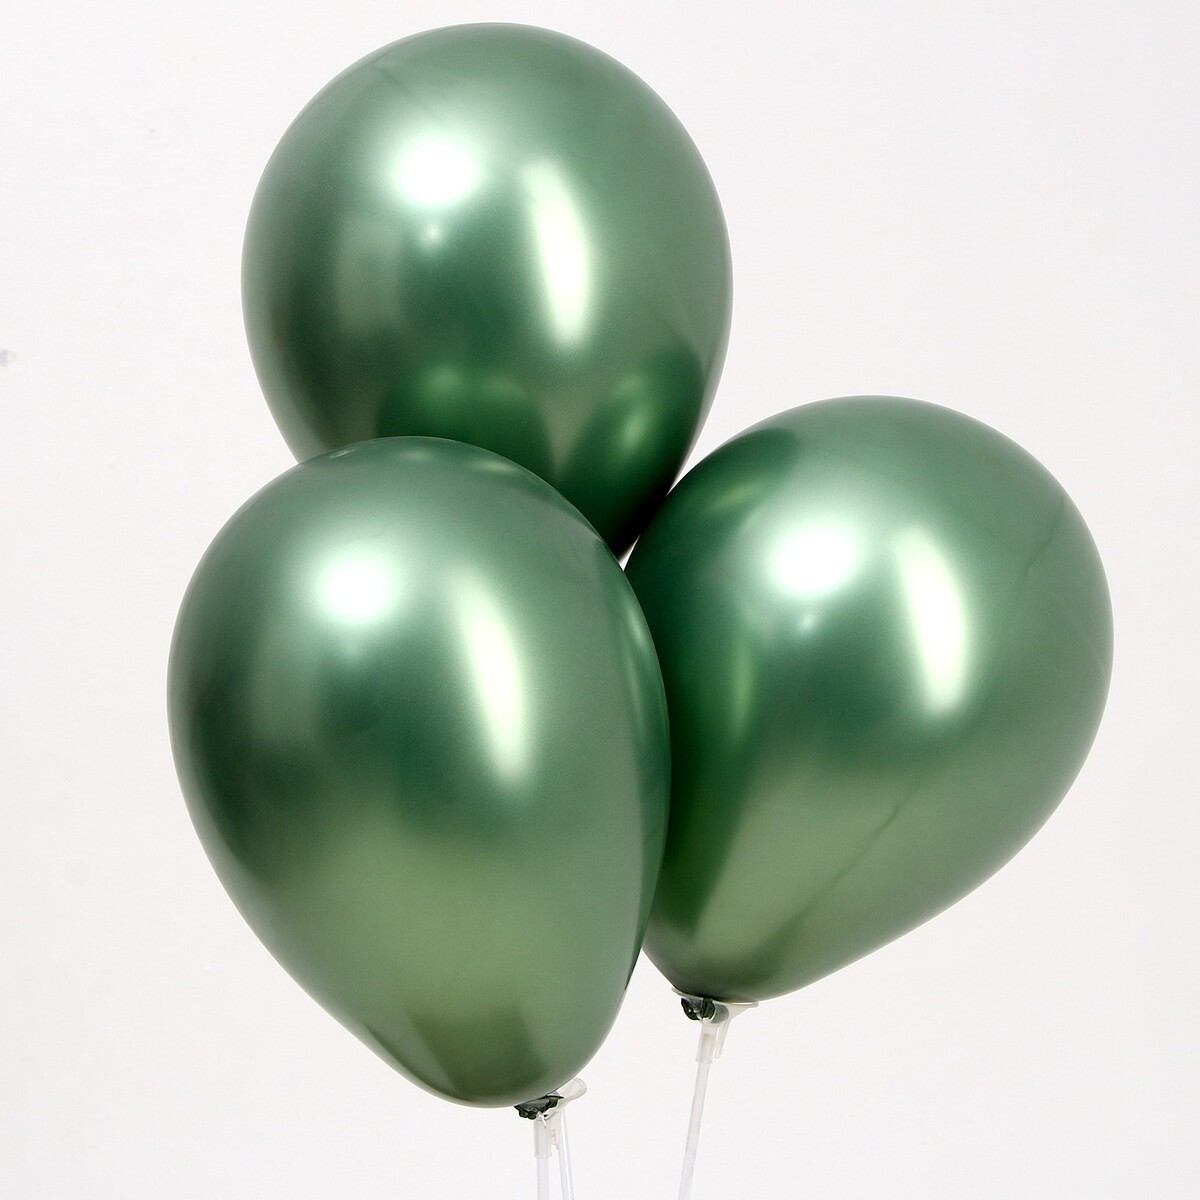 Шар латексный 9“, хром, набор 100 шт, цвет натуральный зеленый шар латексный 12“ хром набор 100 шт натуральный зеленый